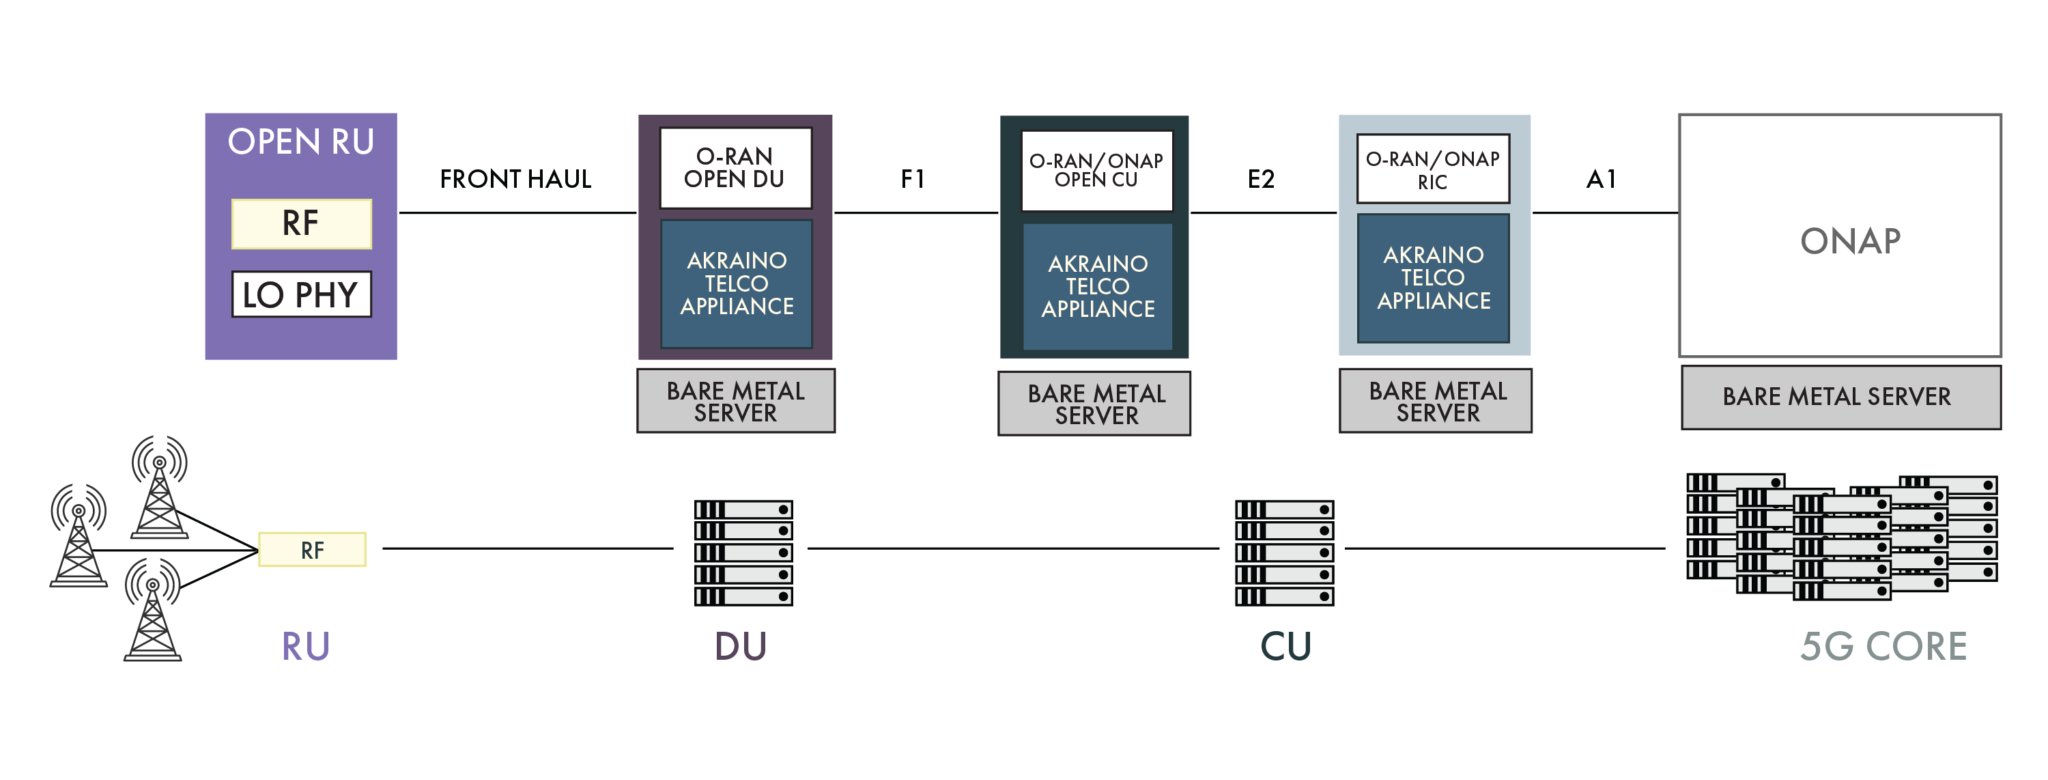 图4.开放的5G网络由O-RAN、ONAP和Akraino软件组件组成